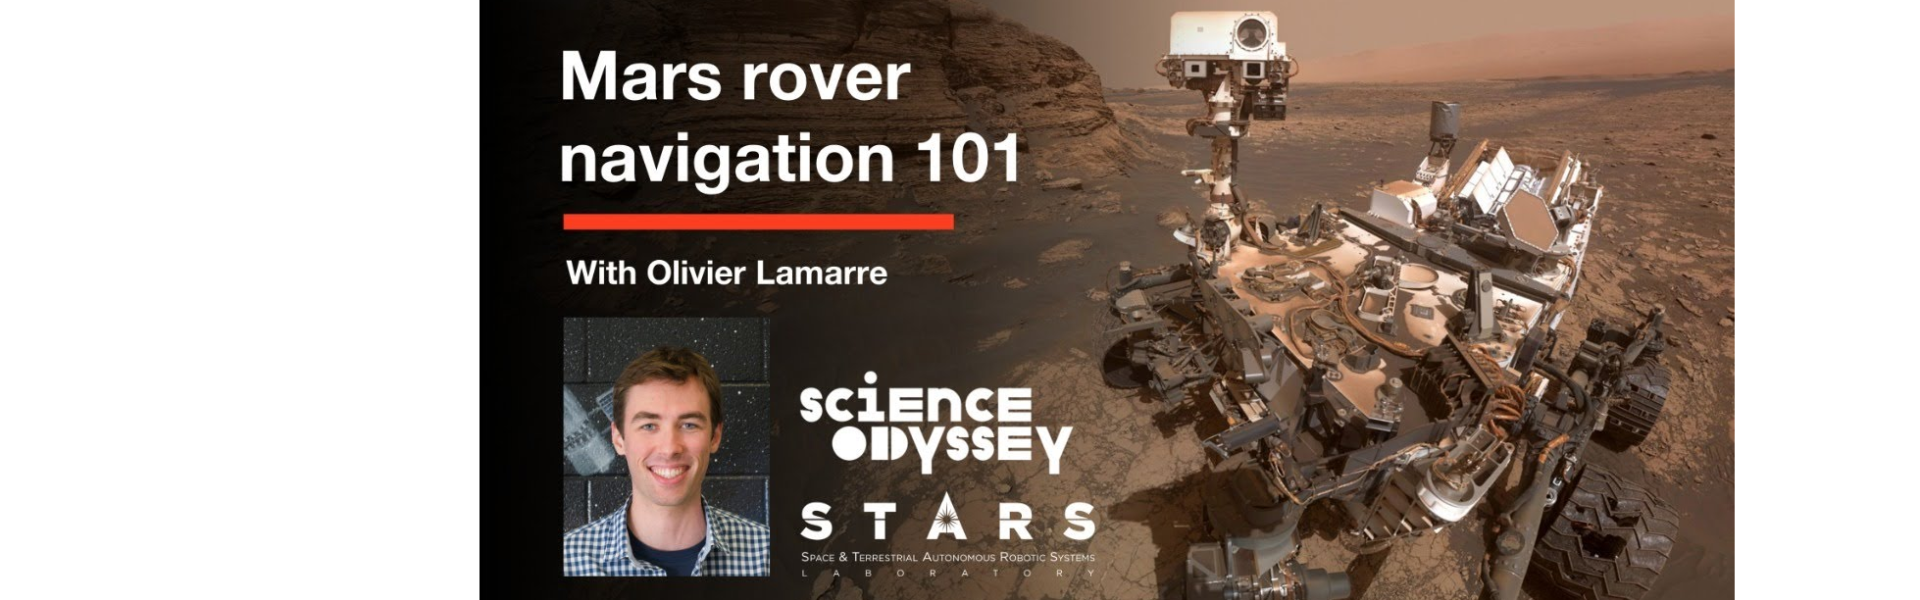 Mars rover navigation 101